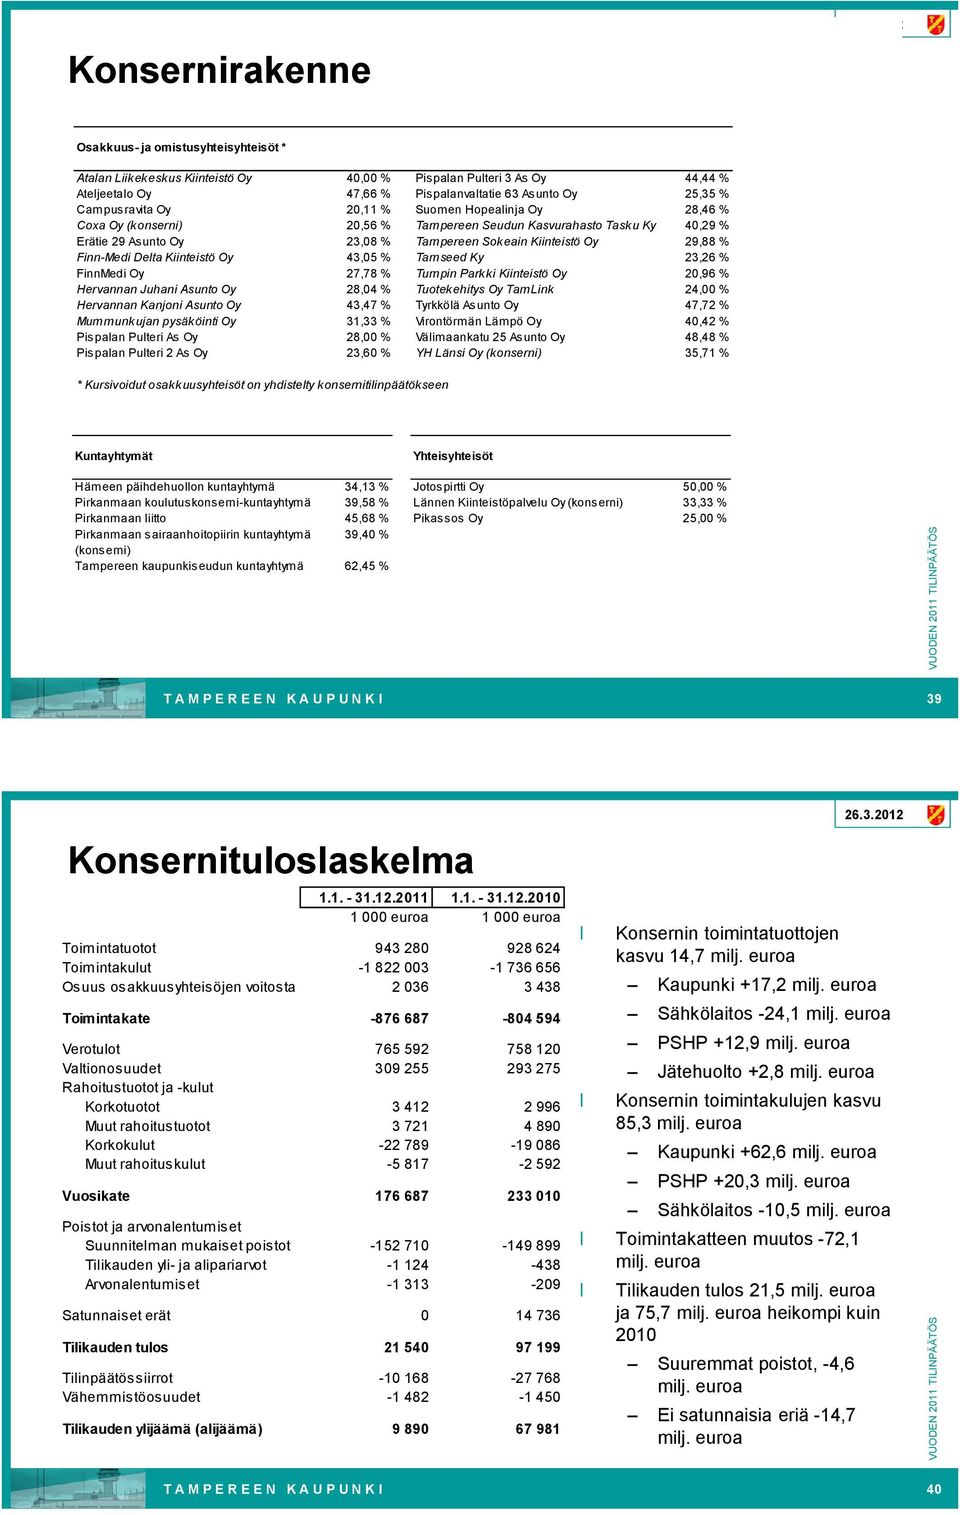 Kiinteistö Oy 43,05 % Tamseed Ky 23,26 % FinnMedi Oy 27,78 % Tumpin Parkki Kiinteistö Oy 20,96 % Hervannan Juhani Asunto Oy 28,04 % Tuotekehitys Oy TamLink 24,00 % Hervannan Kanjoni Asunto Oy 43,47 %